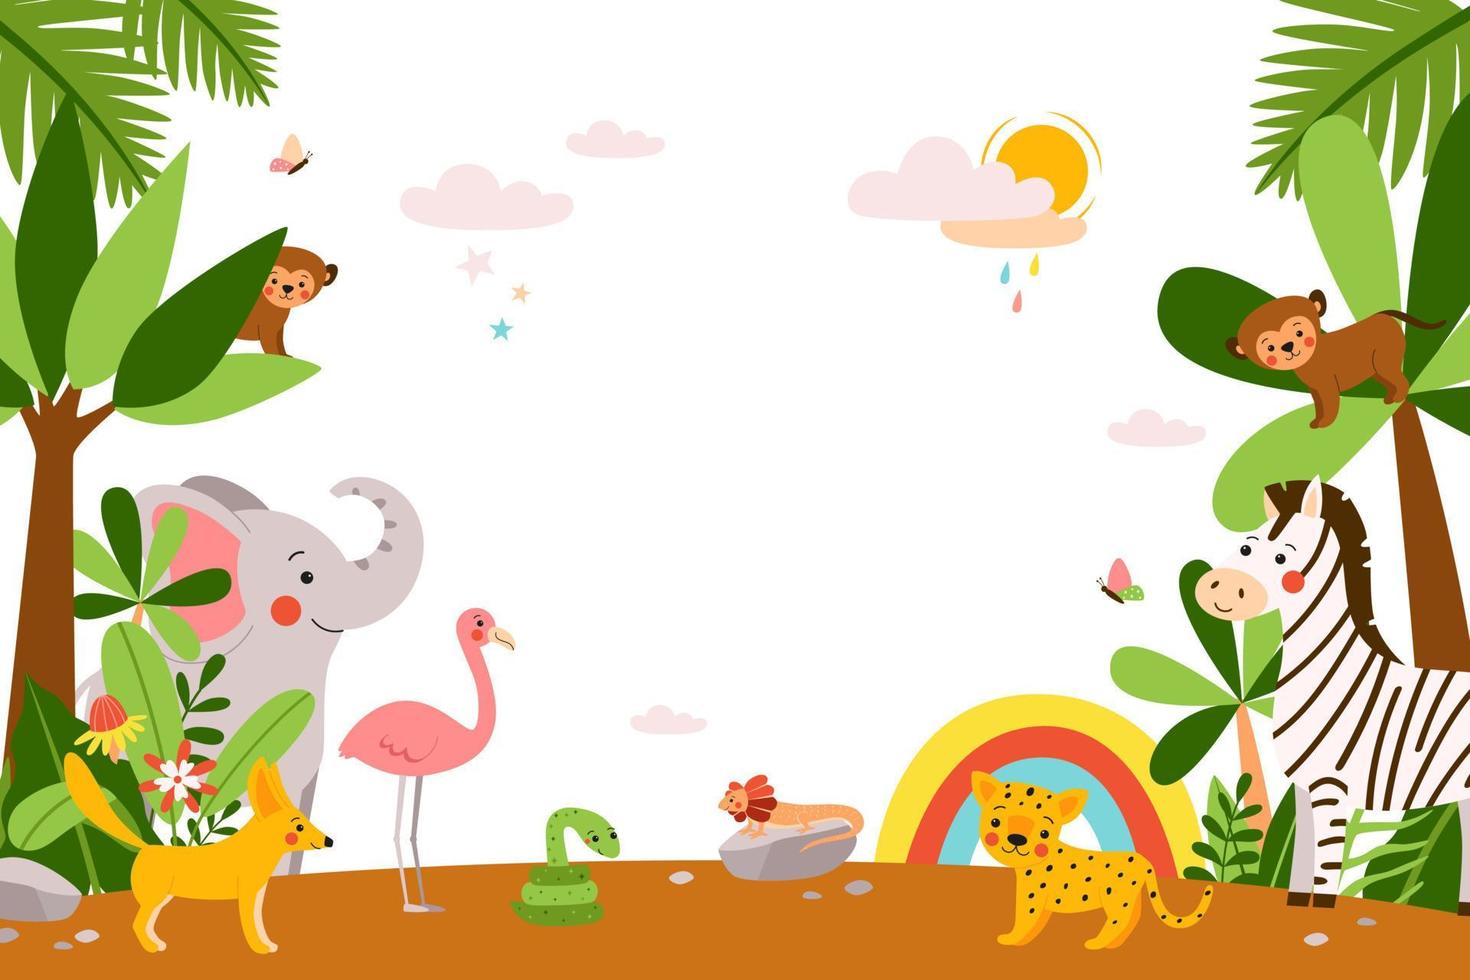 süße afrikanische babytiere auf dschungelhintergrund. Vektor lustige Kinderfiguren - Elefant, Affe, Zebra, Flamingo, Leopard in einem schönen Rohling für Banner, Poster und Diplome